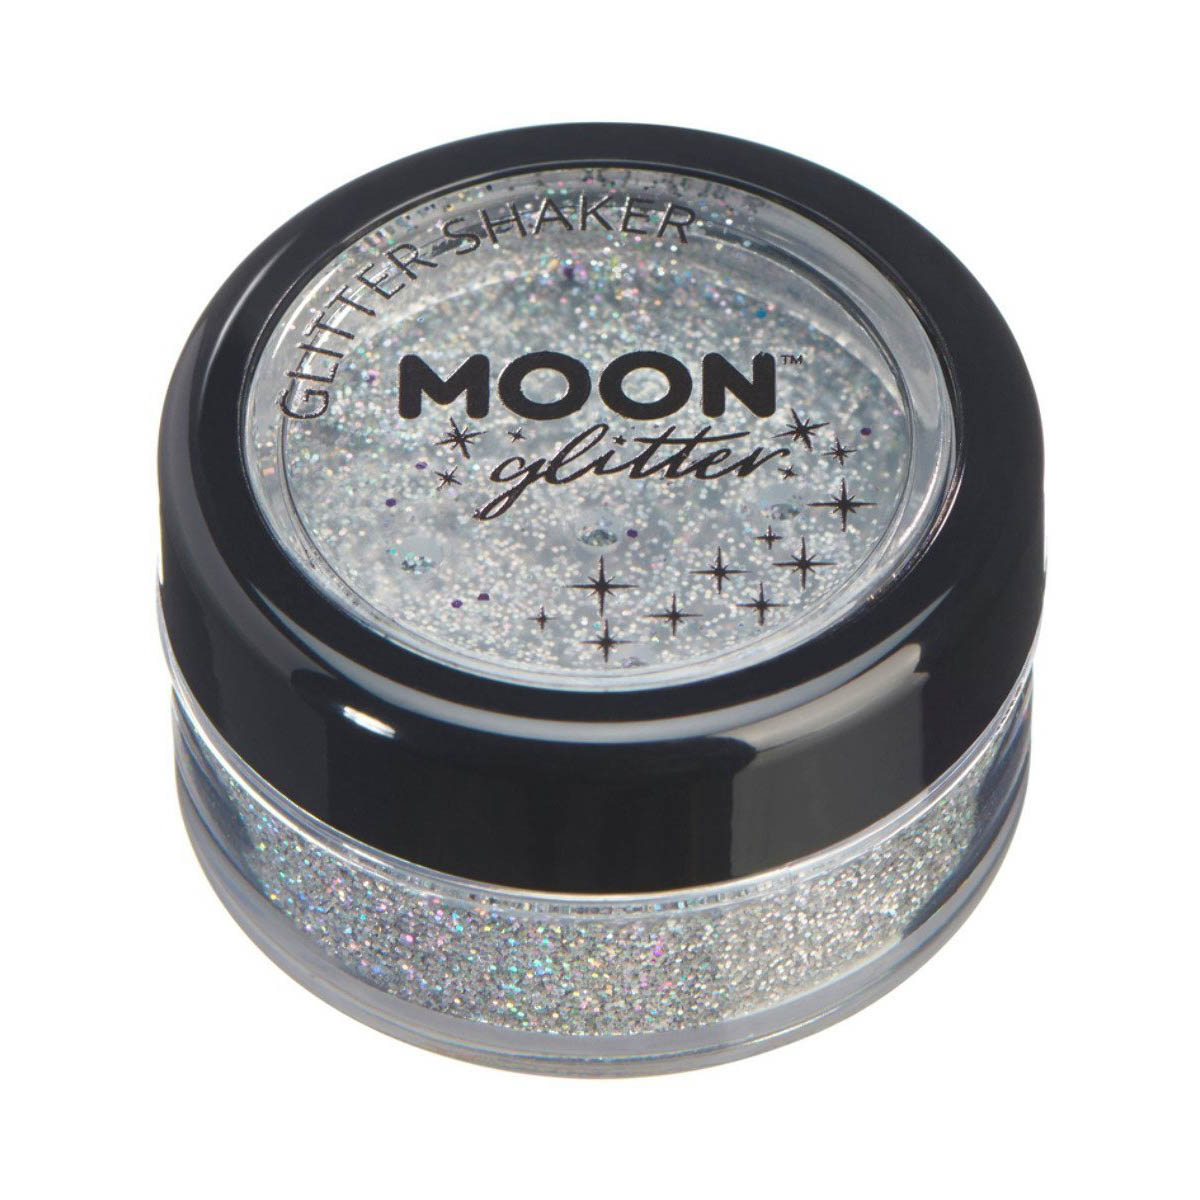 Moon glitter i shaker burk holografisk 5g Silver